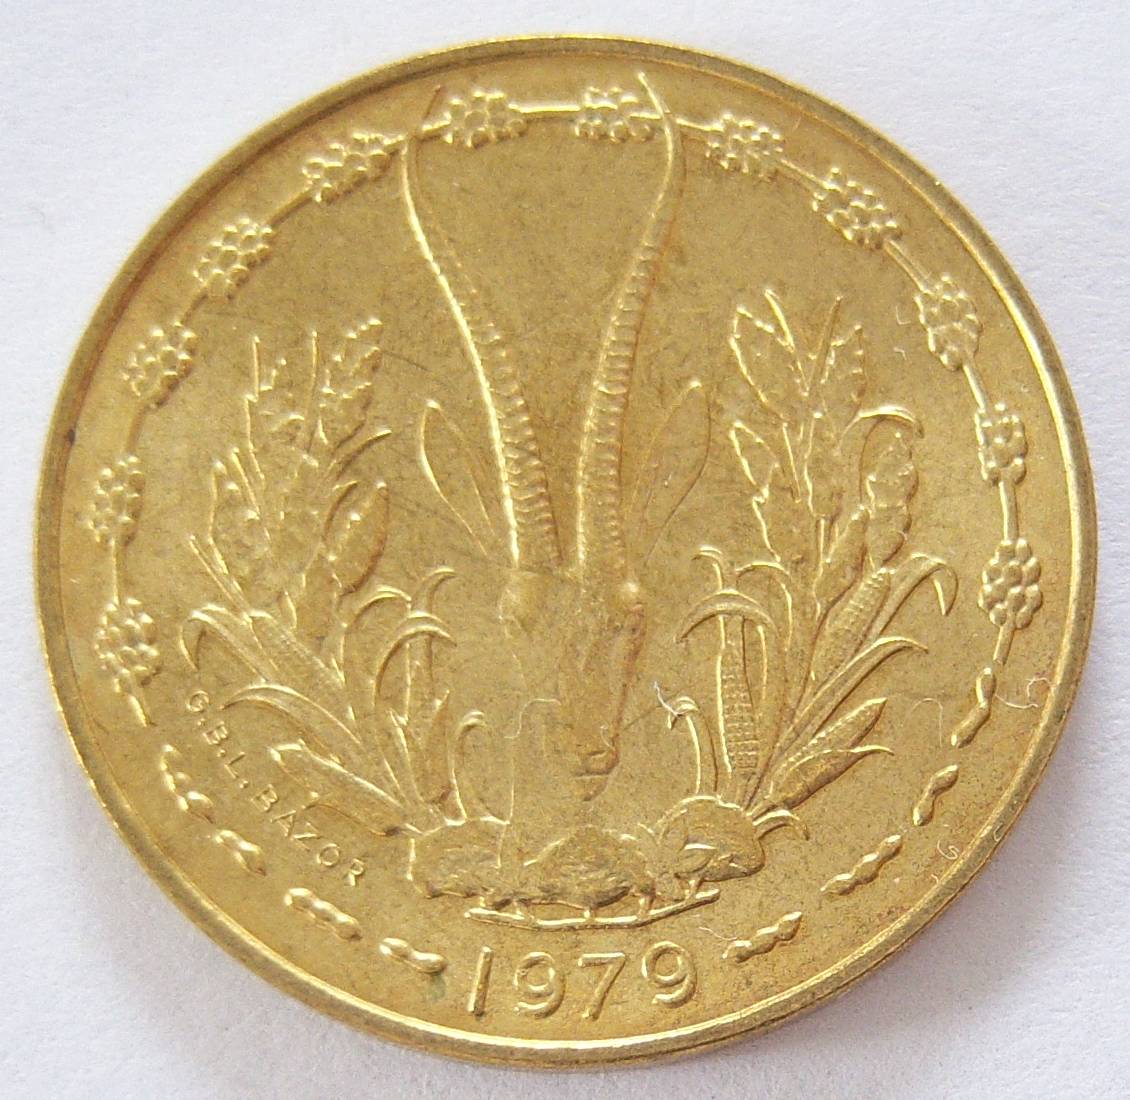  Westafrikanische Staaten 10 Francs 1979   